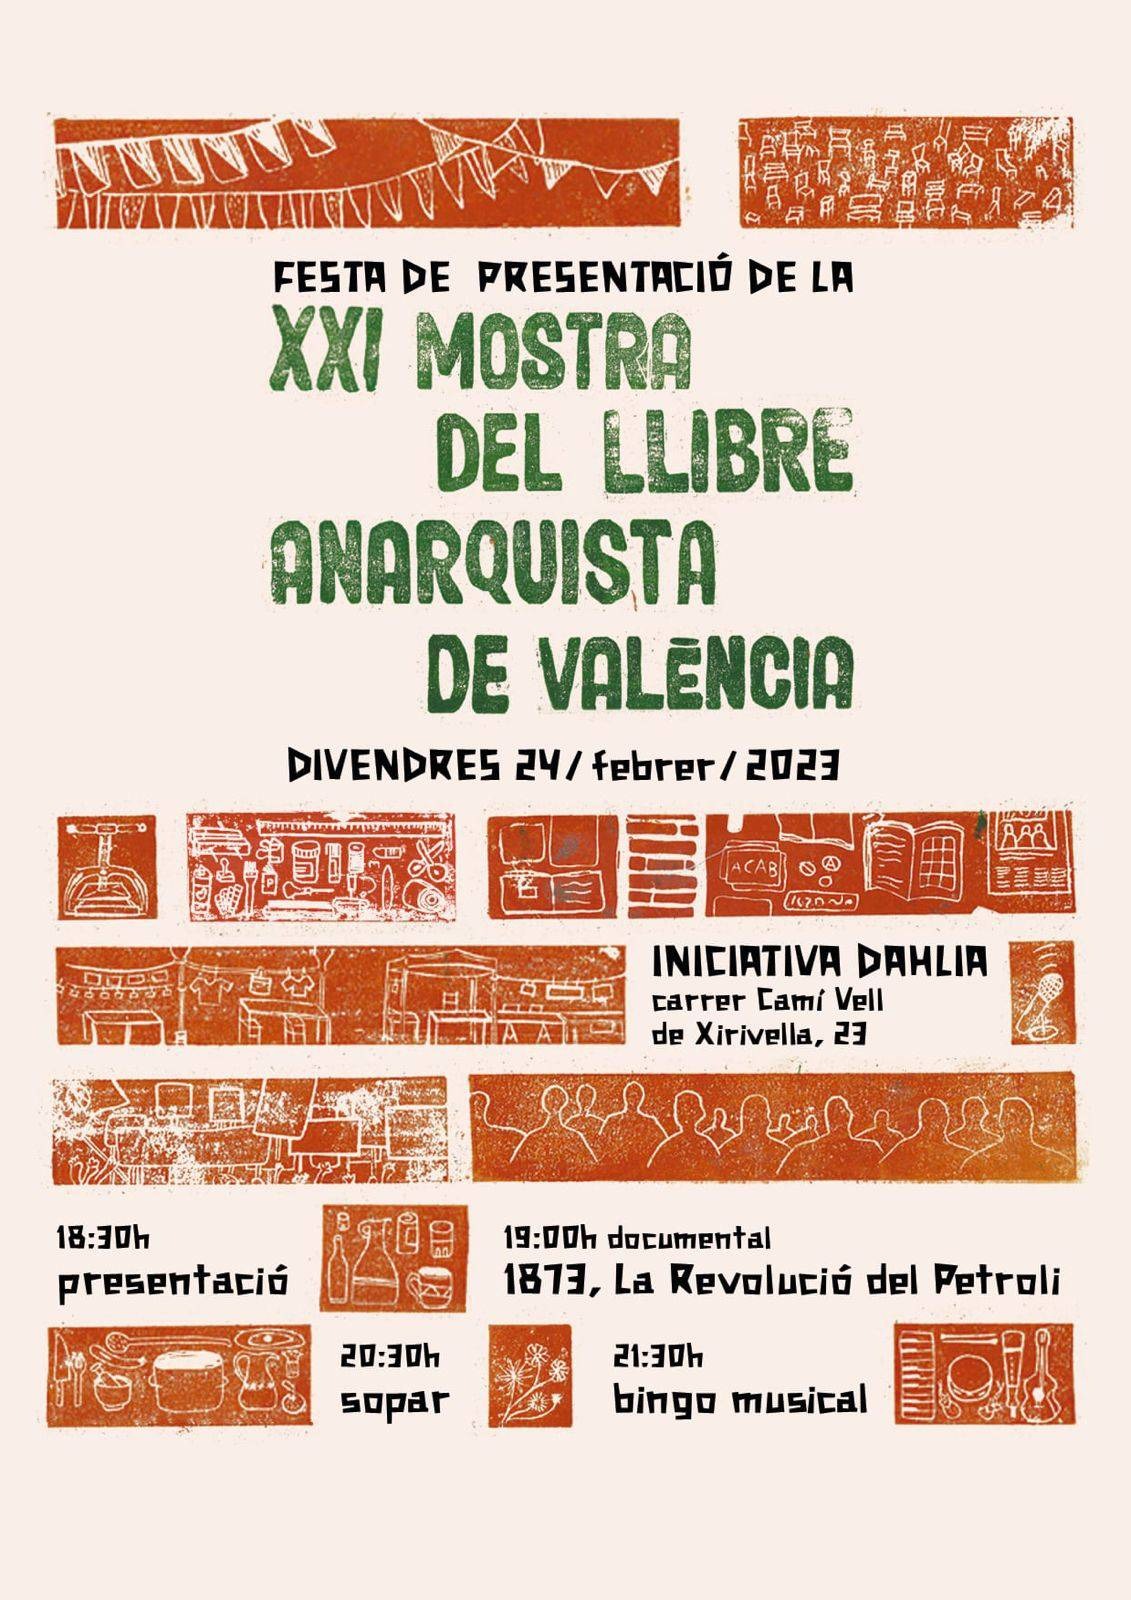 Festa mostra del llibre anarquista valencia